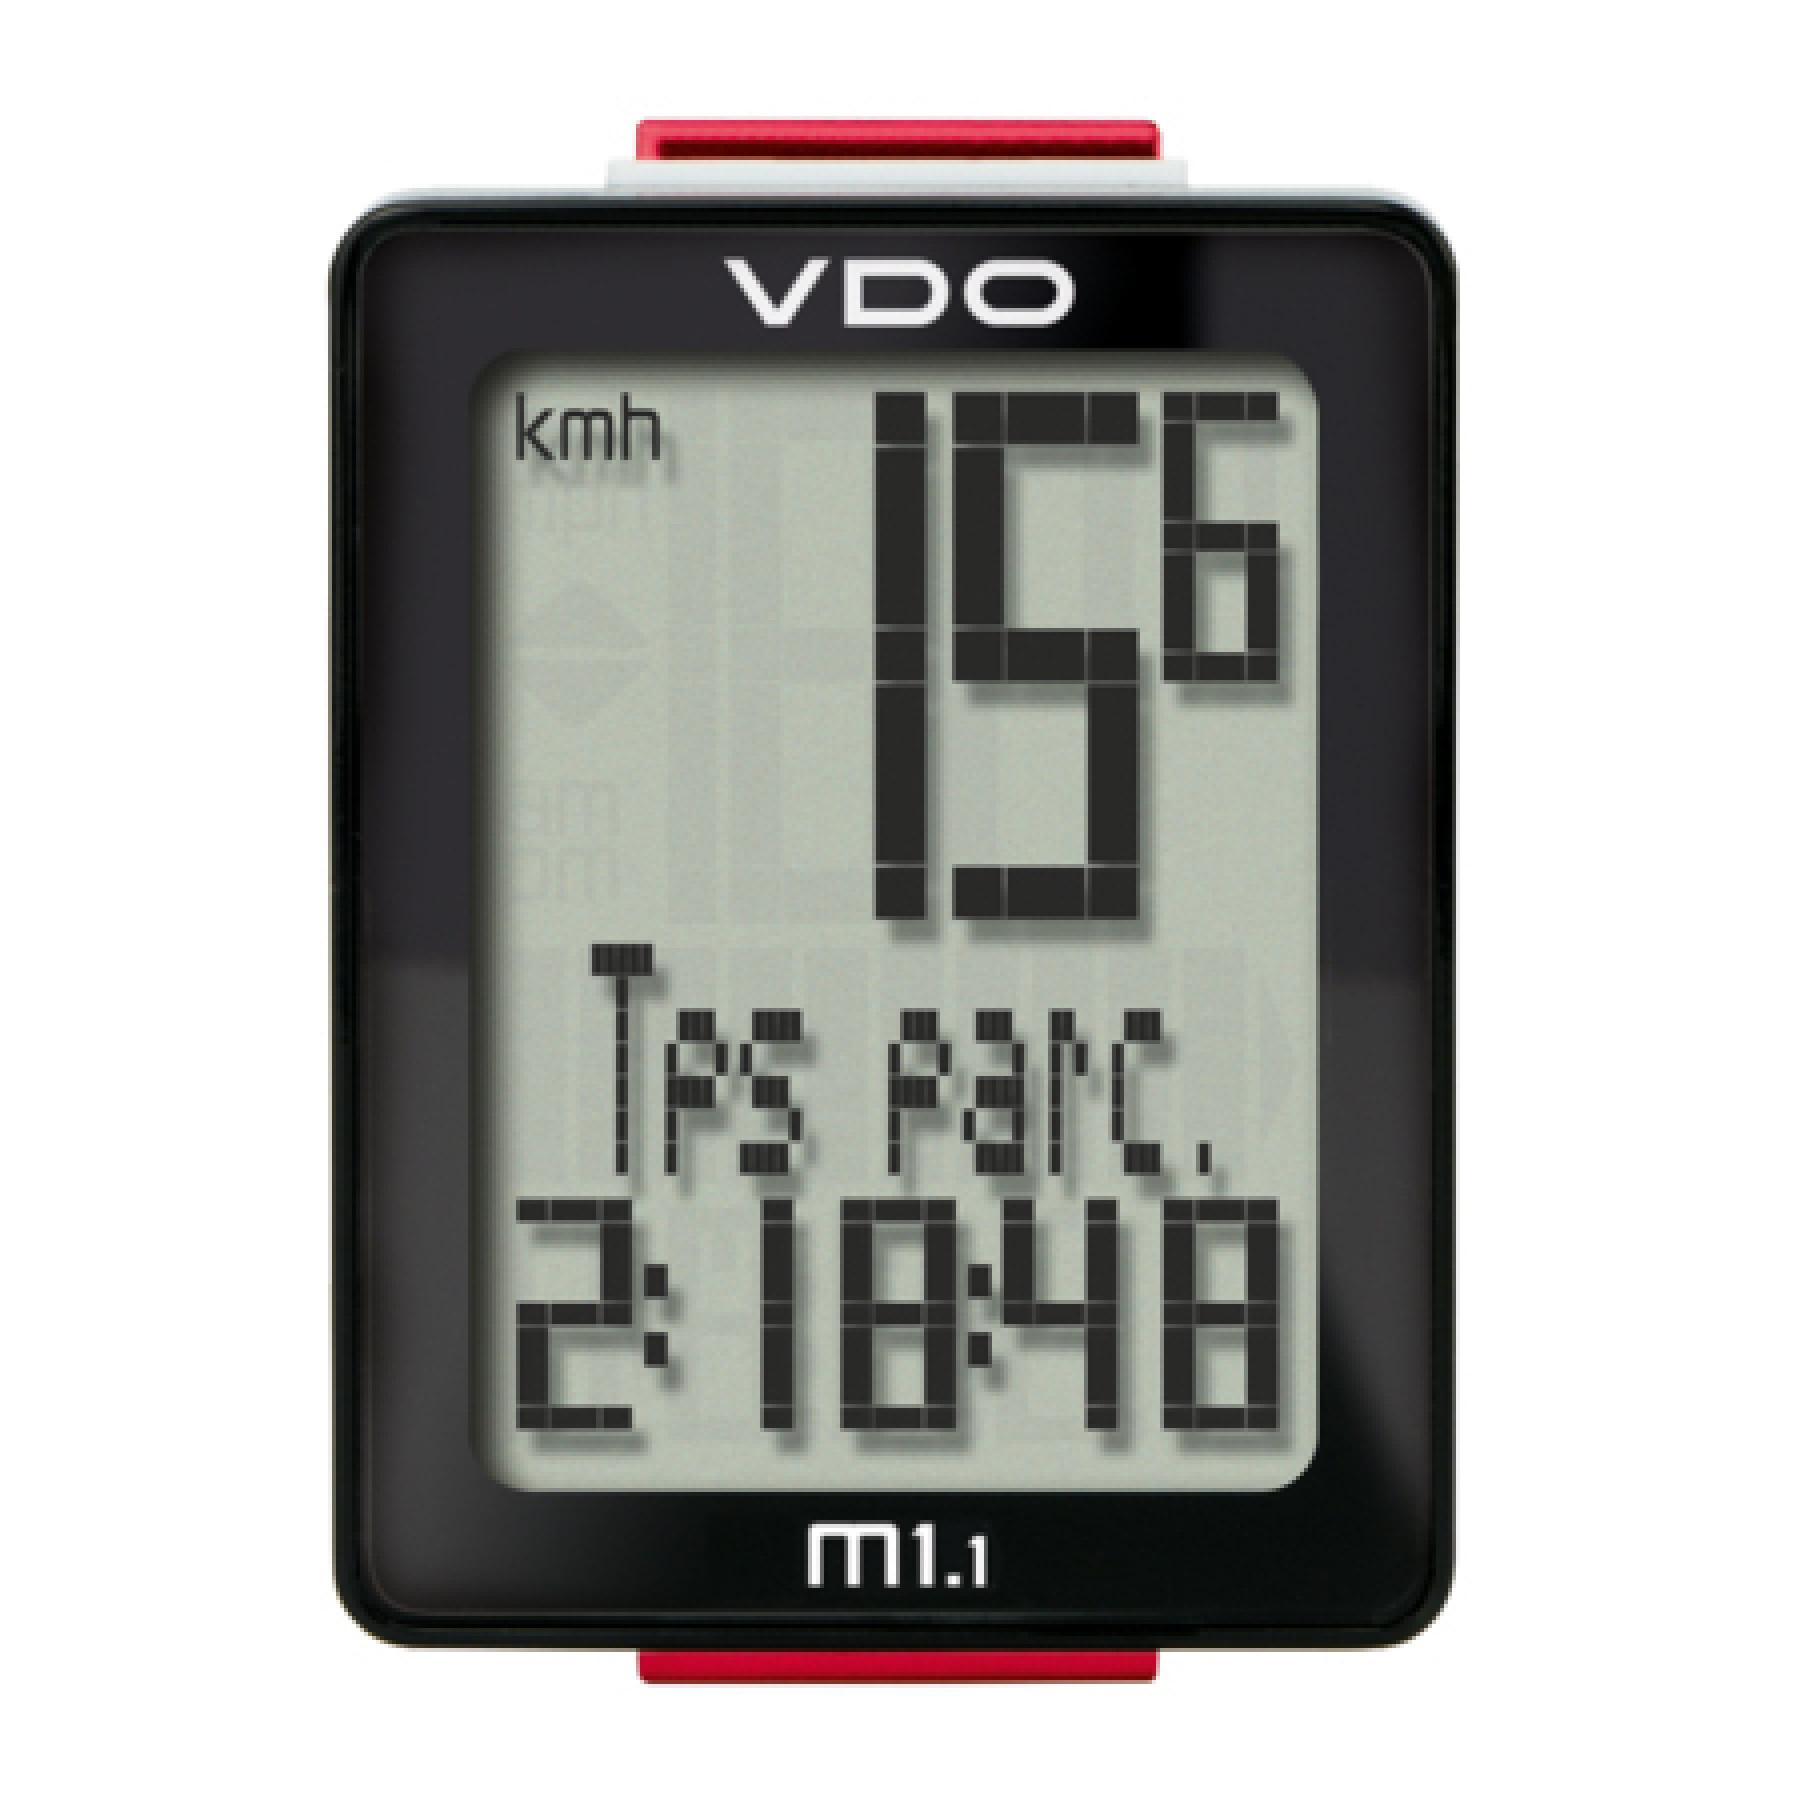 Contador VDO M1.1